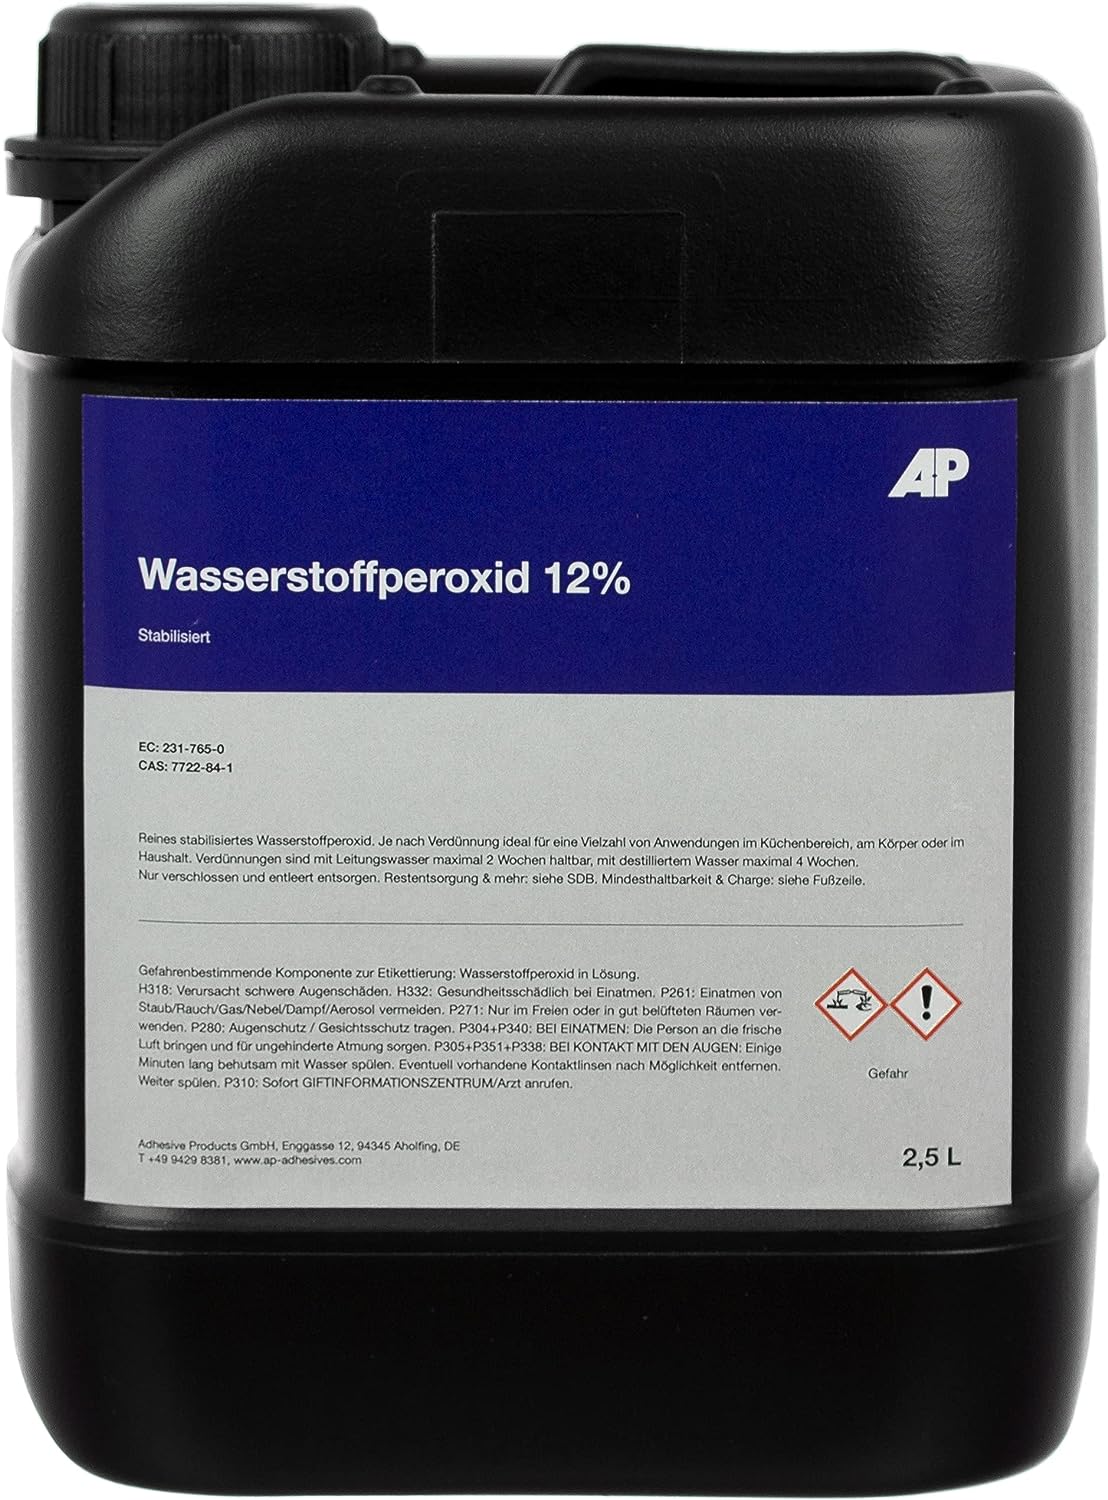 Wasserstoffperoxid 12%, stabilisiert - Stabilisator: Phosphorsäure, technisch reine Qualität (2,5 L)